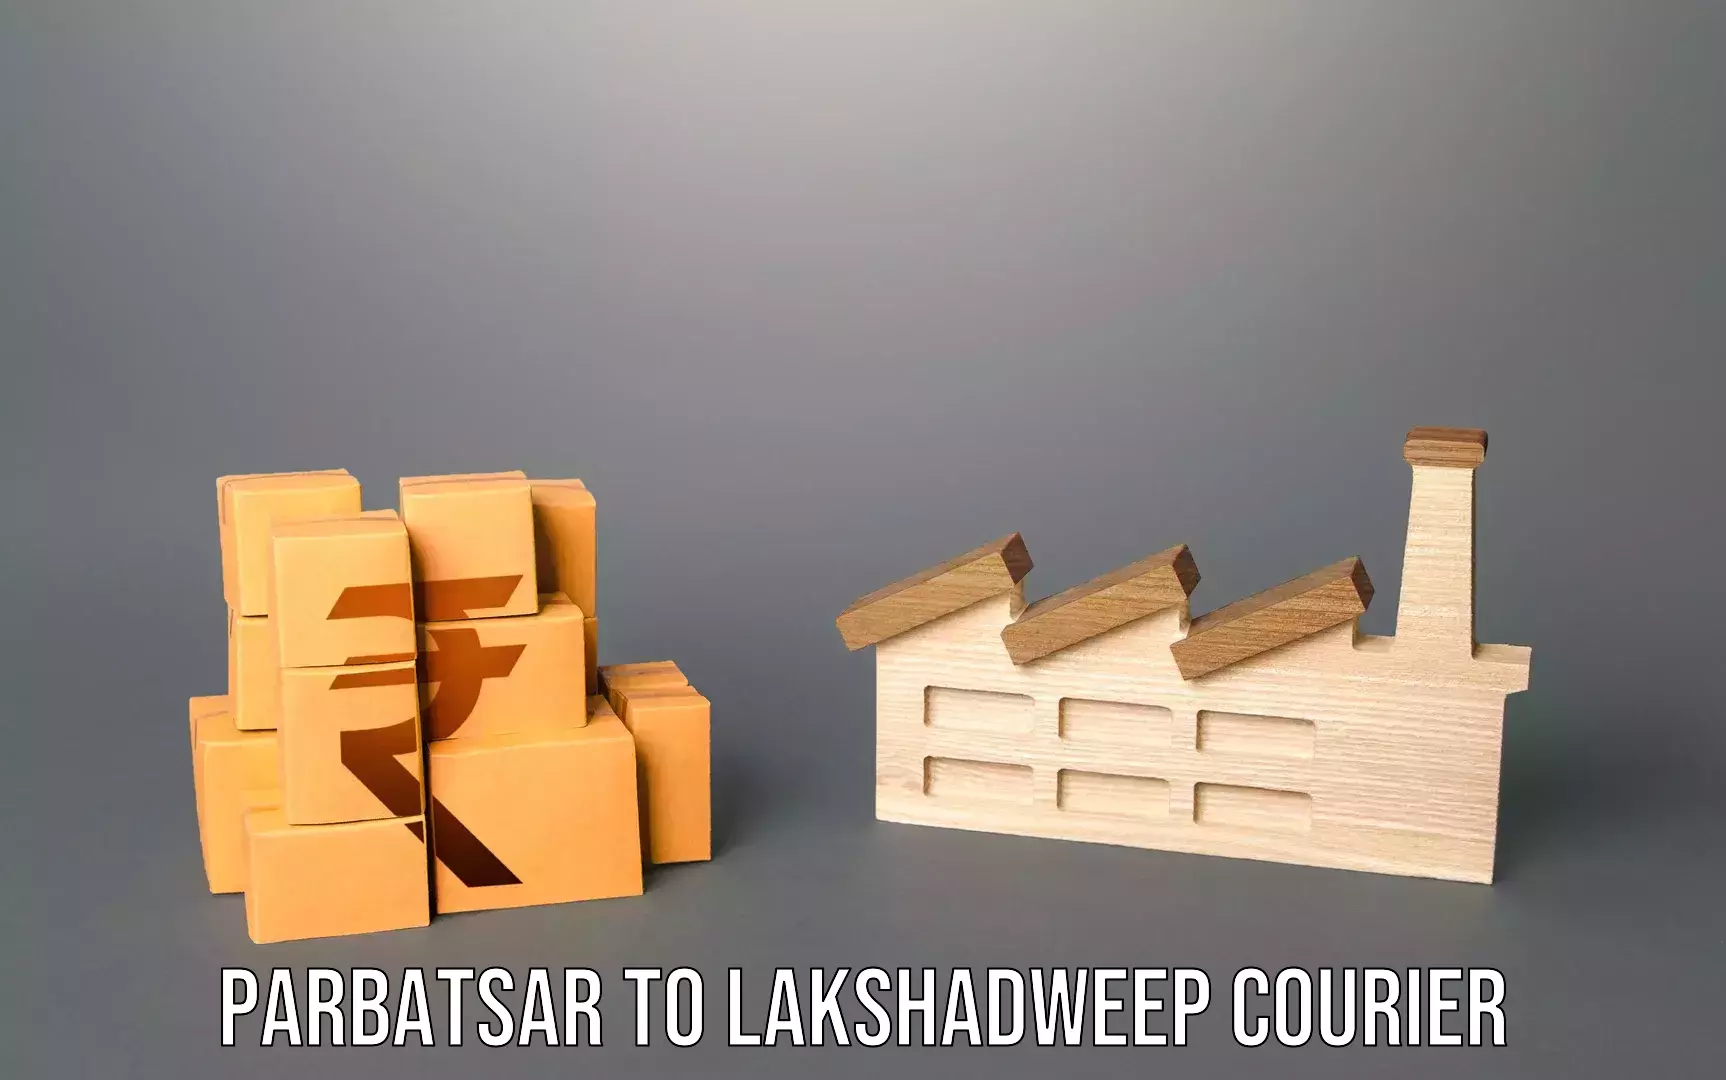 Luggage transit service Parbatsar to Lakshadweep